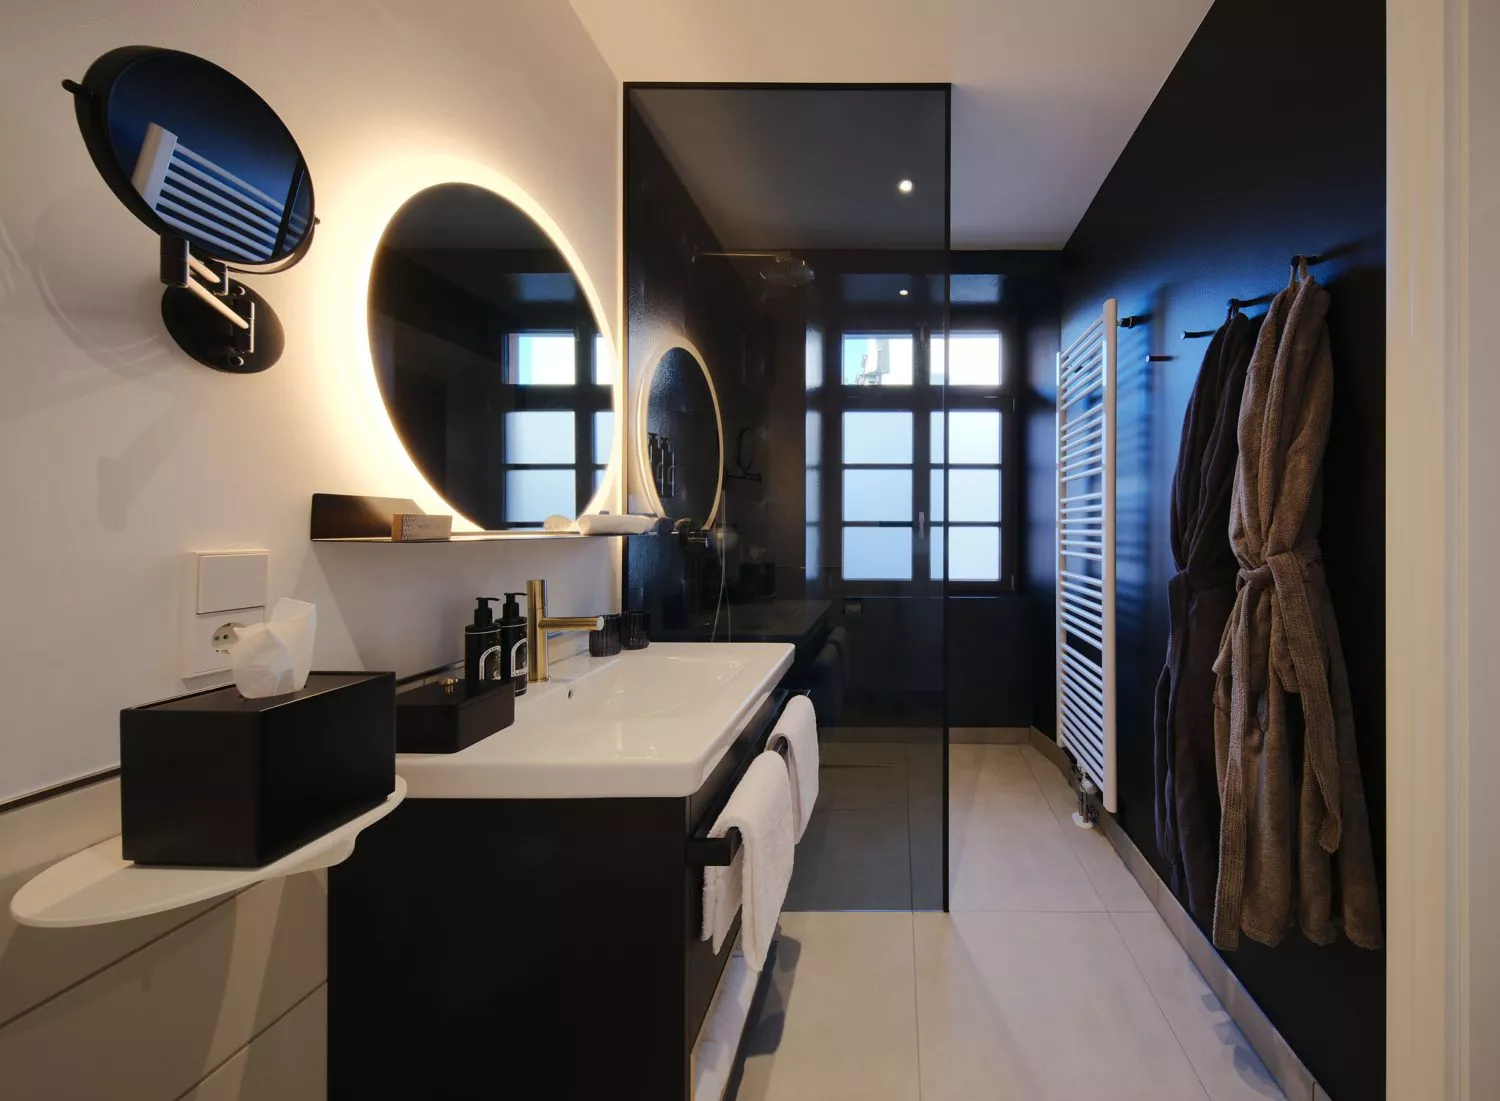 Die Badezimmer in der Dependance des hotel am Sophiepnark in Baden-Baden sind groß und barrierefrei mit Regendusche und luxuriösen Amenities